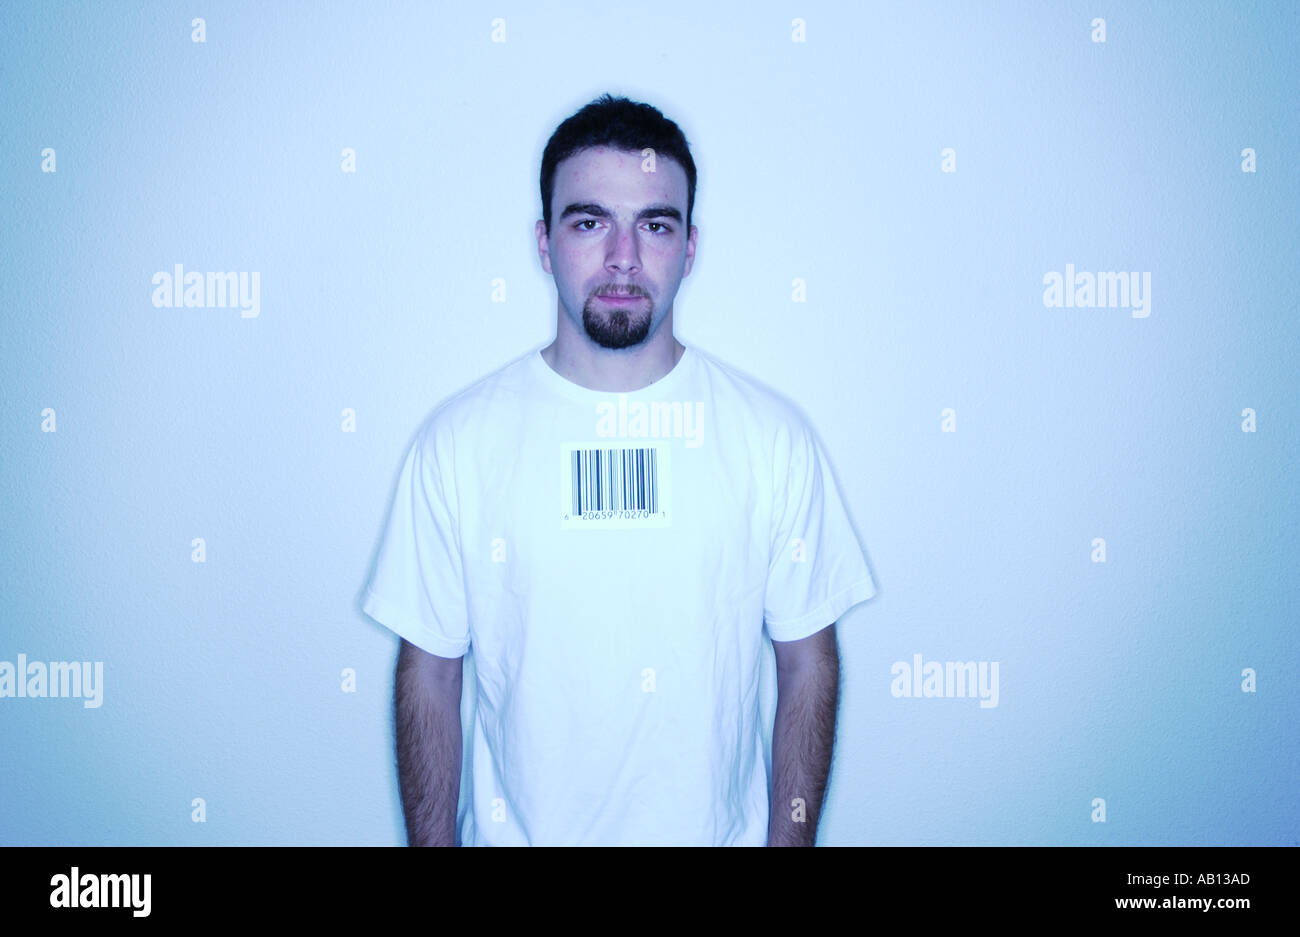 Uomo con etichetta con codice a barre sulla camicia Foto Stock